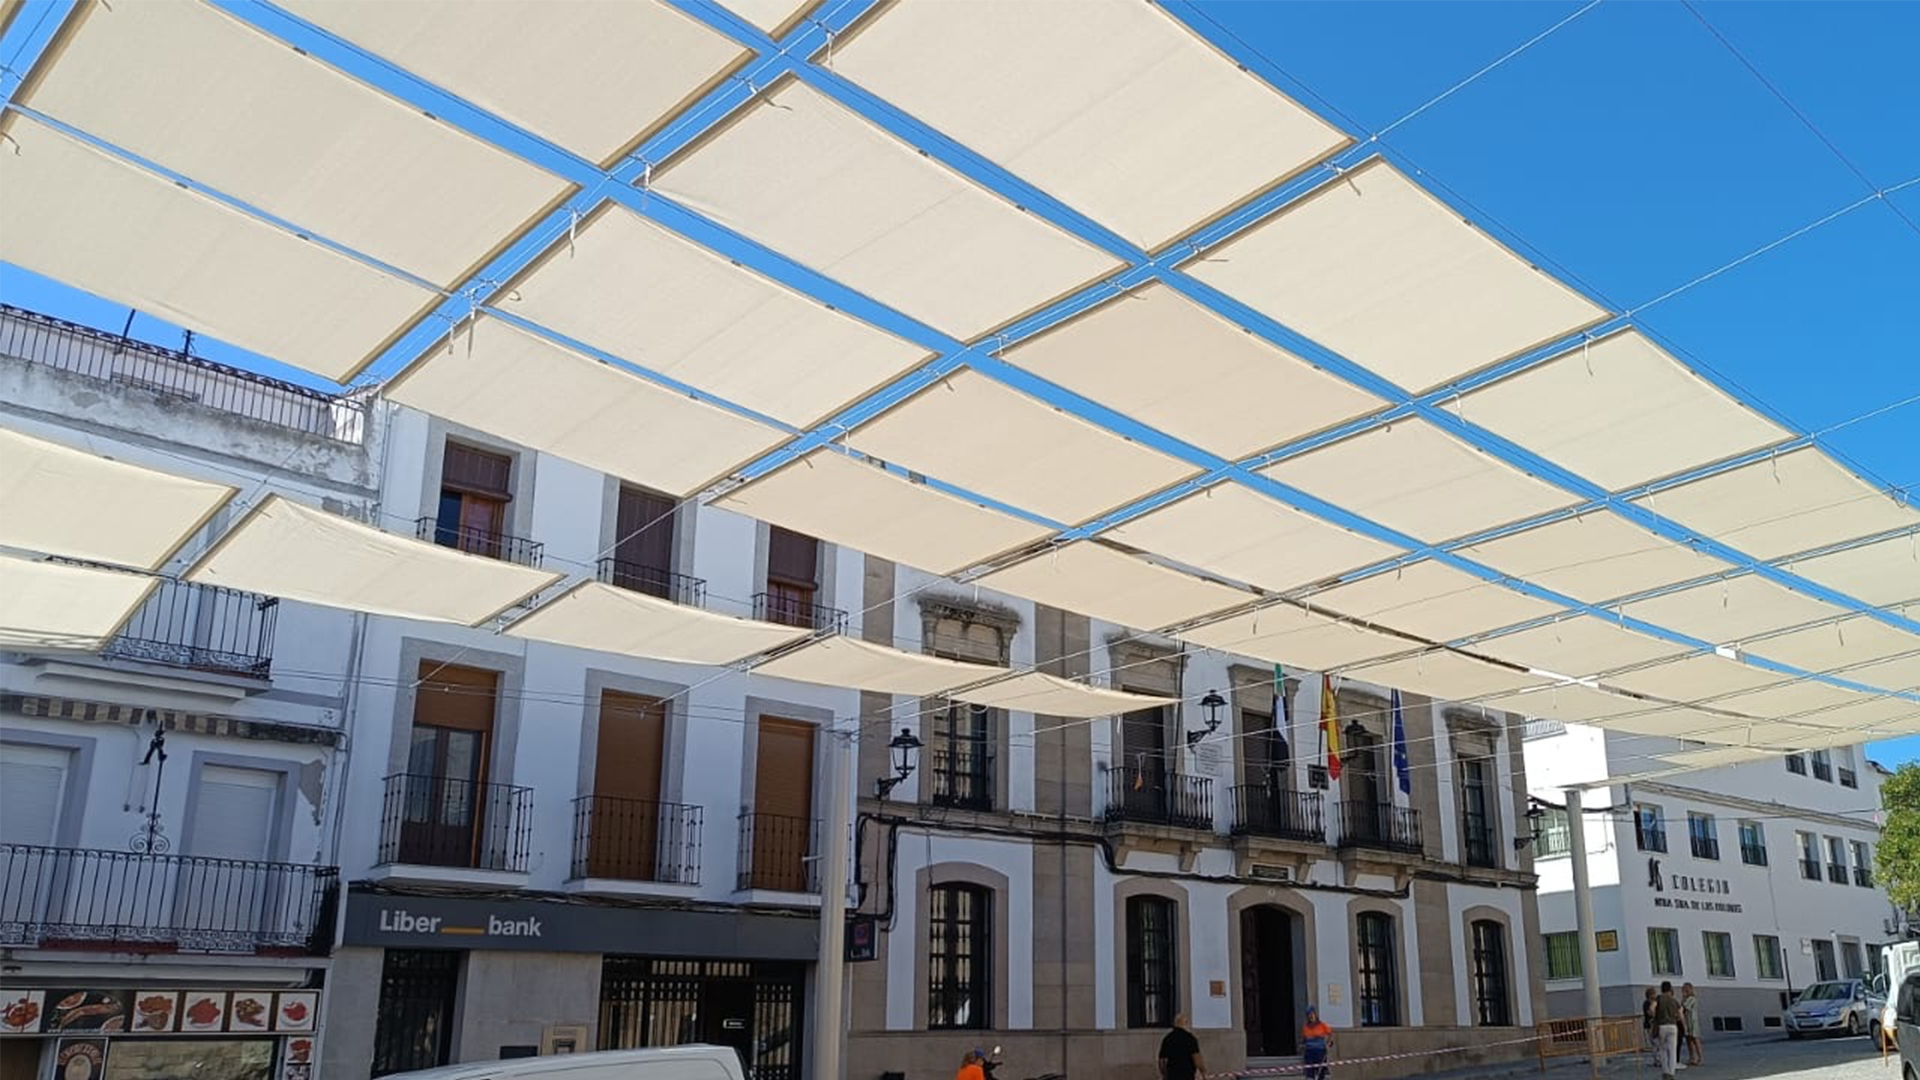 Proyectode arquitectura textil. Fabricación y colocación de entoldado en vía pública en Arroyo de la Luz, Cáceres